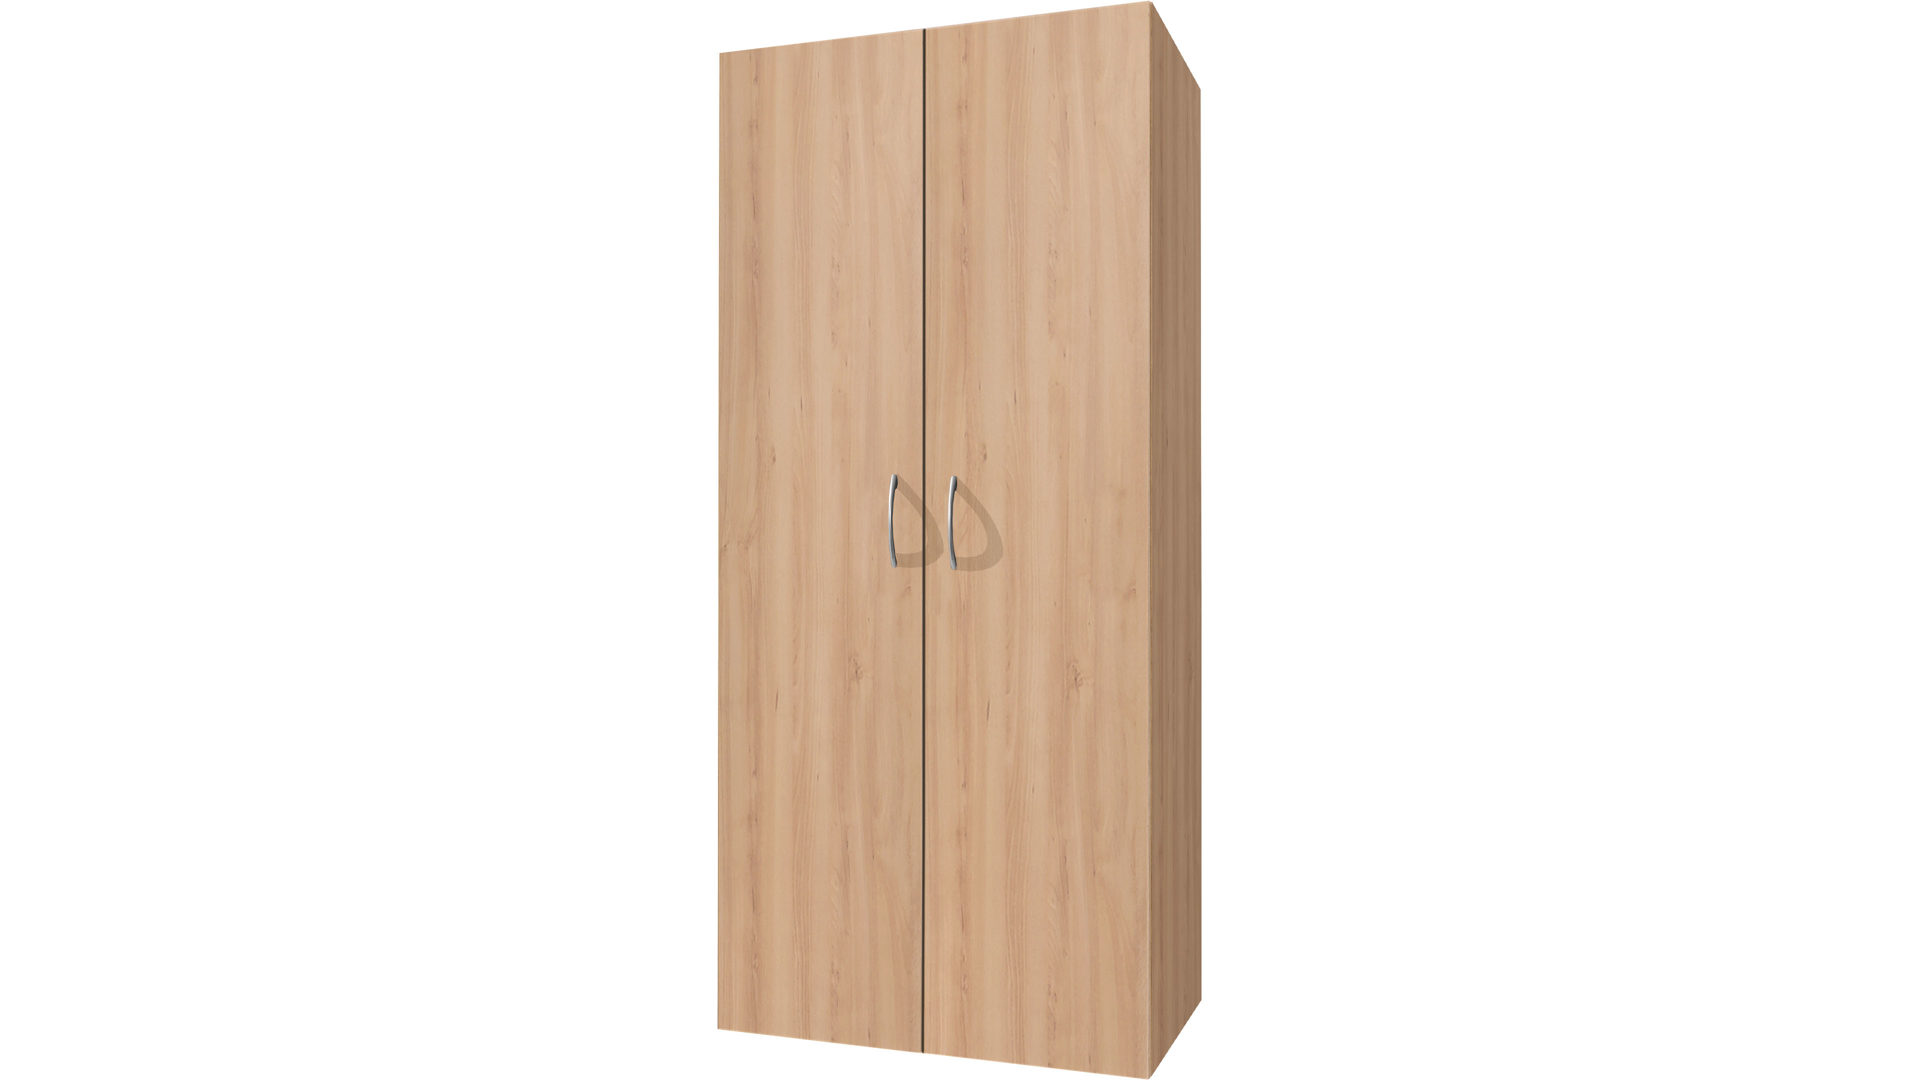 Mehrzweckschrank Wimex aus Holz in Holzfarben Mehrzweckschrank, Kleiderschrank bzw. Schlafzimmermöbel Edelbuchefarbene Kunststoffoberfläche - Breite ca. 70 cm, zwei Türen